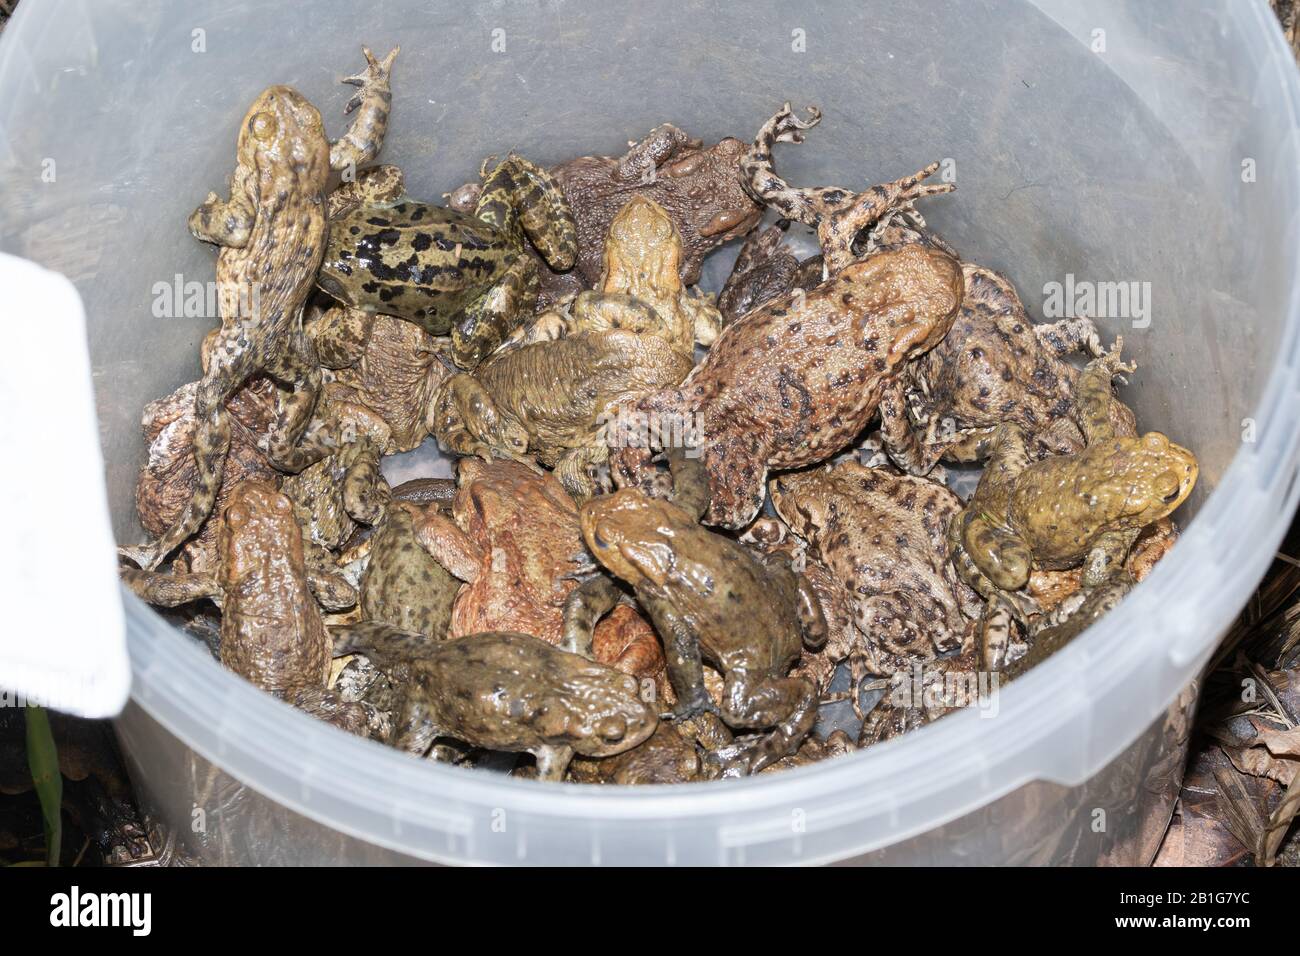 Viele verbreitete Kröten (Bufo bufo) in einem Eimer (und einem Frosch). Diese wurden bei einer Kreuzfahrt auf einer Kröte von einer Straße abgeholt und in der Nähe eines Teiches in Sicherheit gebracht Stockfoto